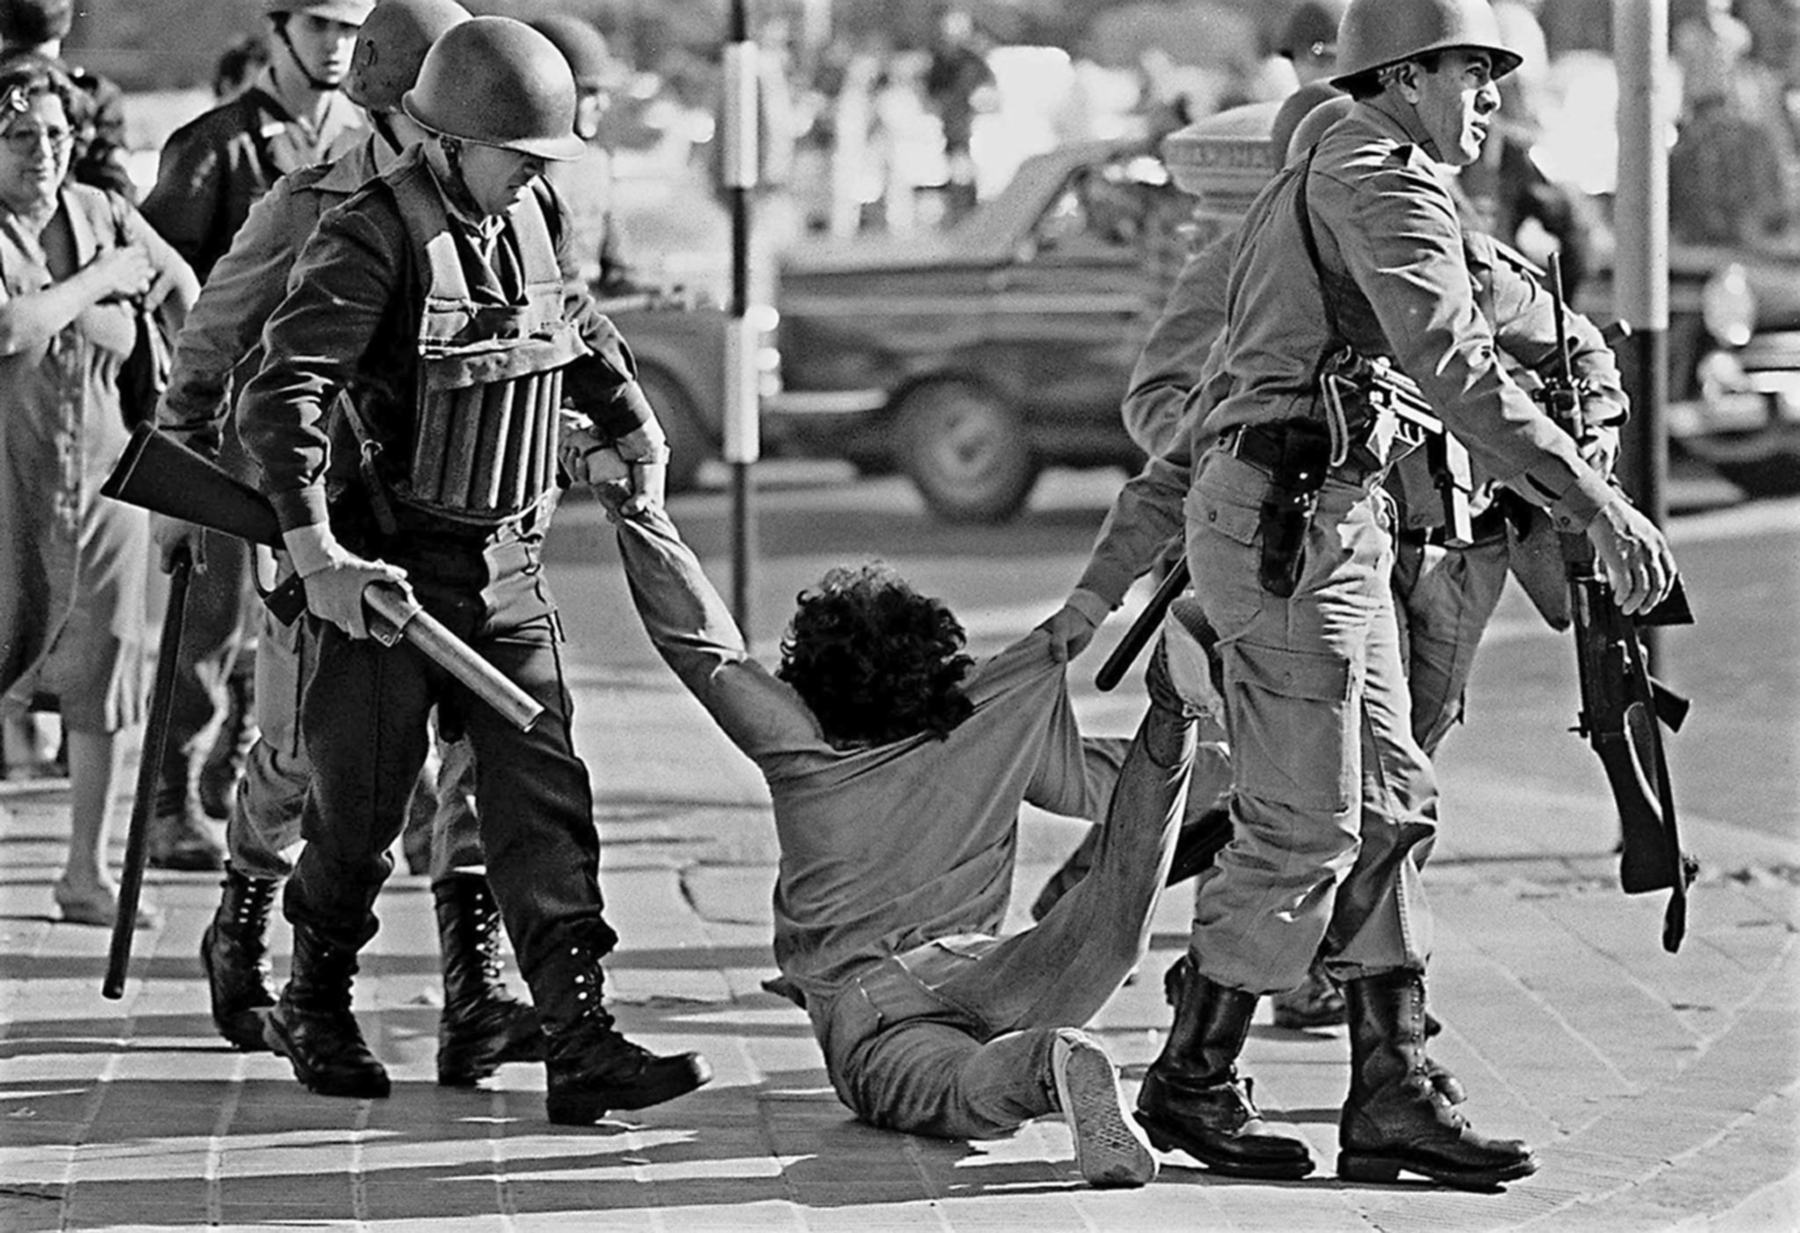 Fotografia em preto e branco. Militares arrastando uma pessoa pela rua. Eles carregam armas. Ao fundo, outras pessoas observam a cena.